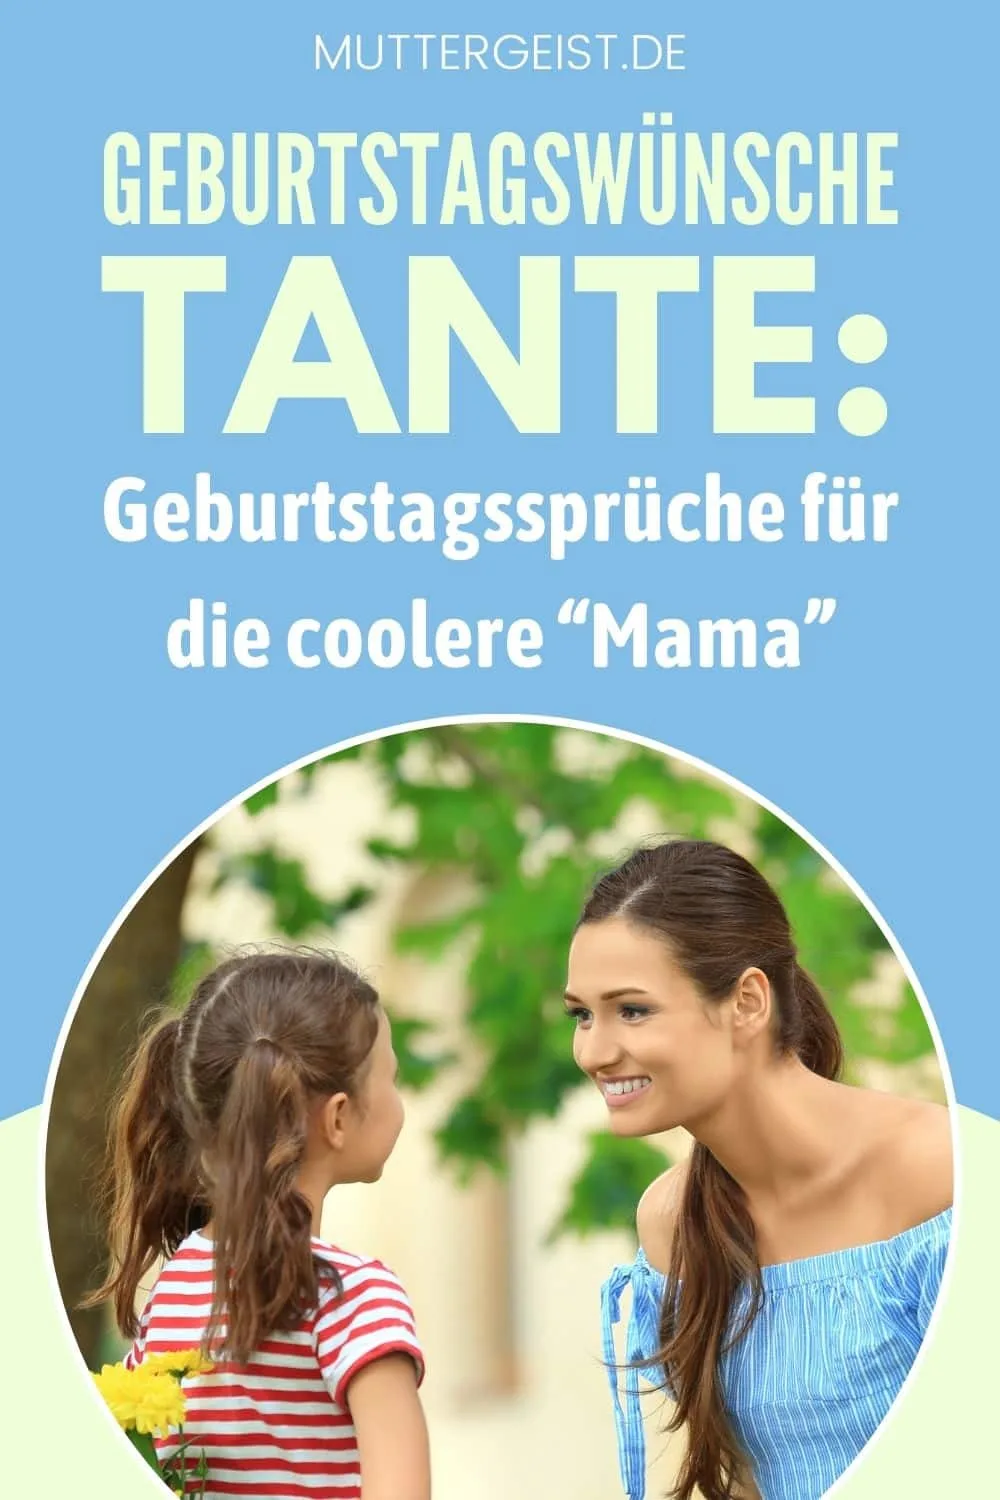 Geburtstagswünsche Tante -Geburtstagssprüche Für Die Coolere “Mama” Pinterest